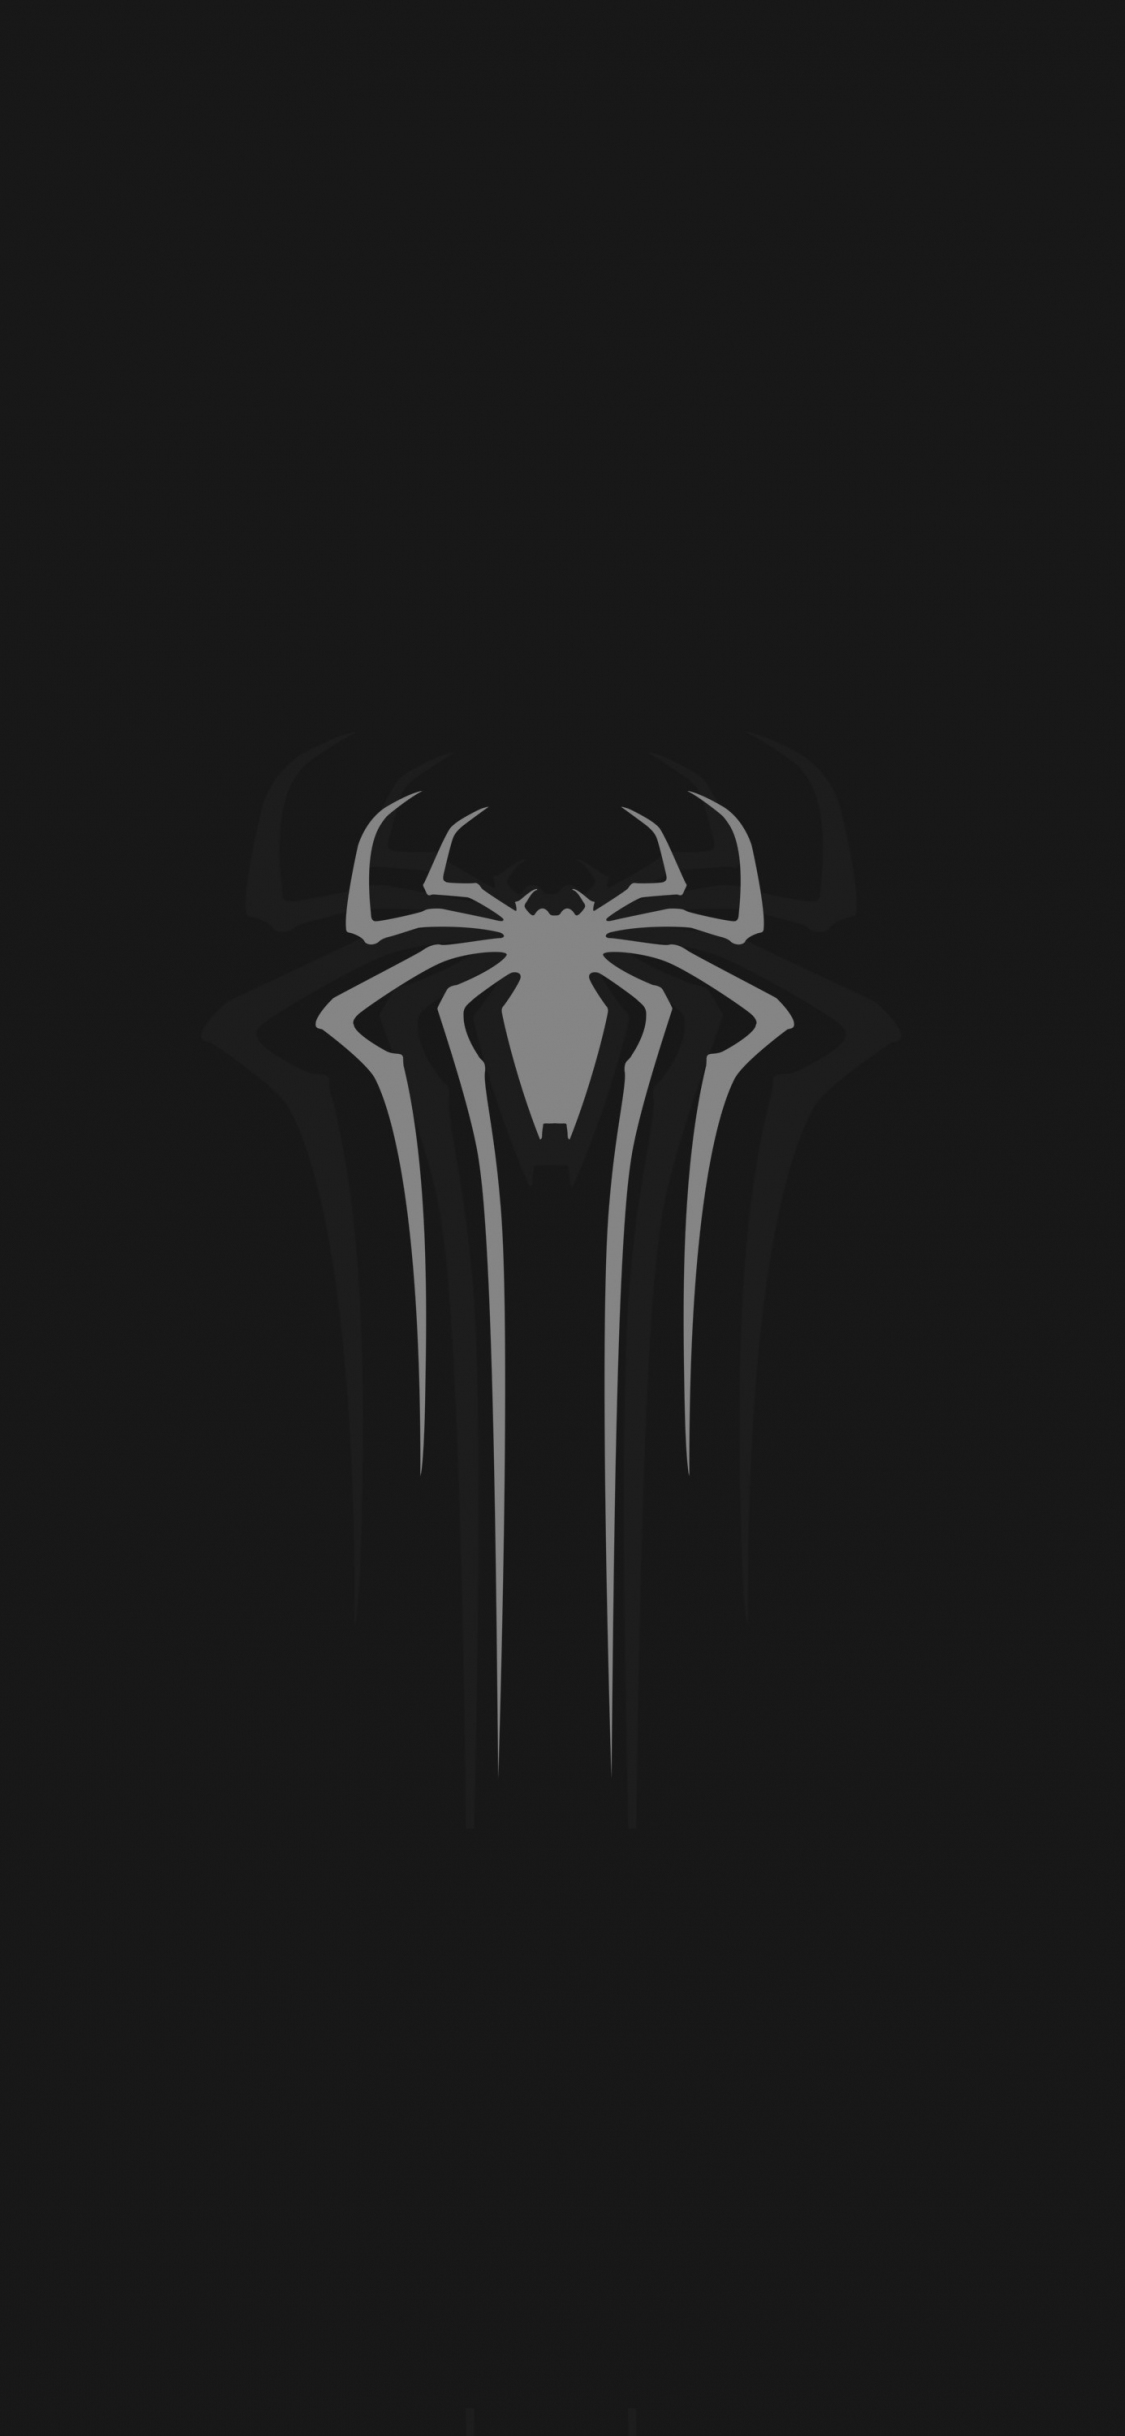 Download wallpaper 1125x2436 logo, gray, spider-man, minimal, dark, iphone  x, 1125x2436 hd background, 15218